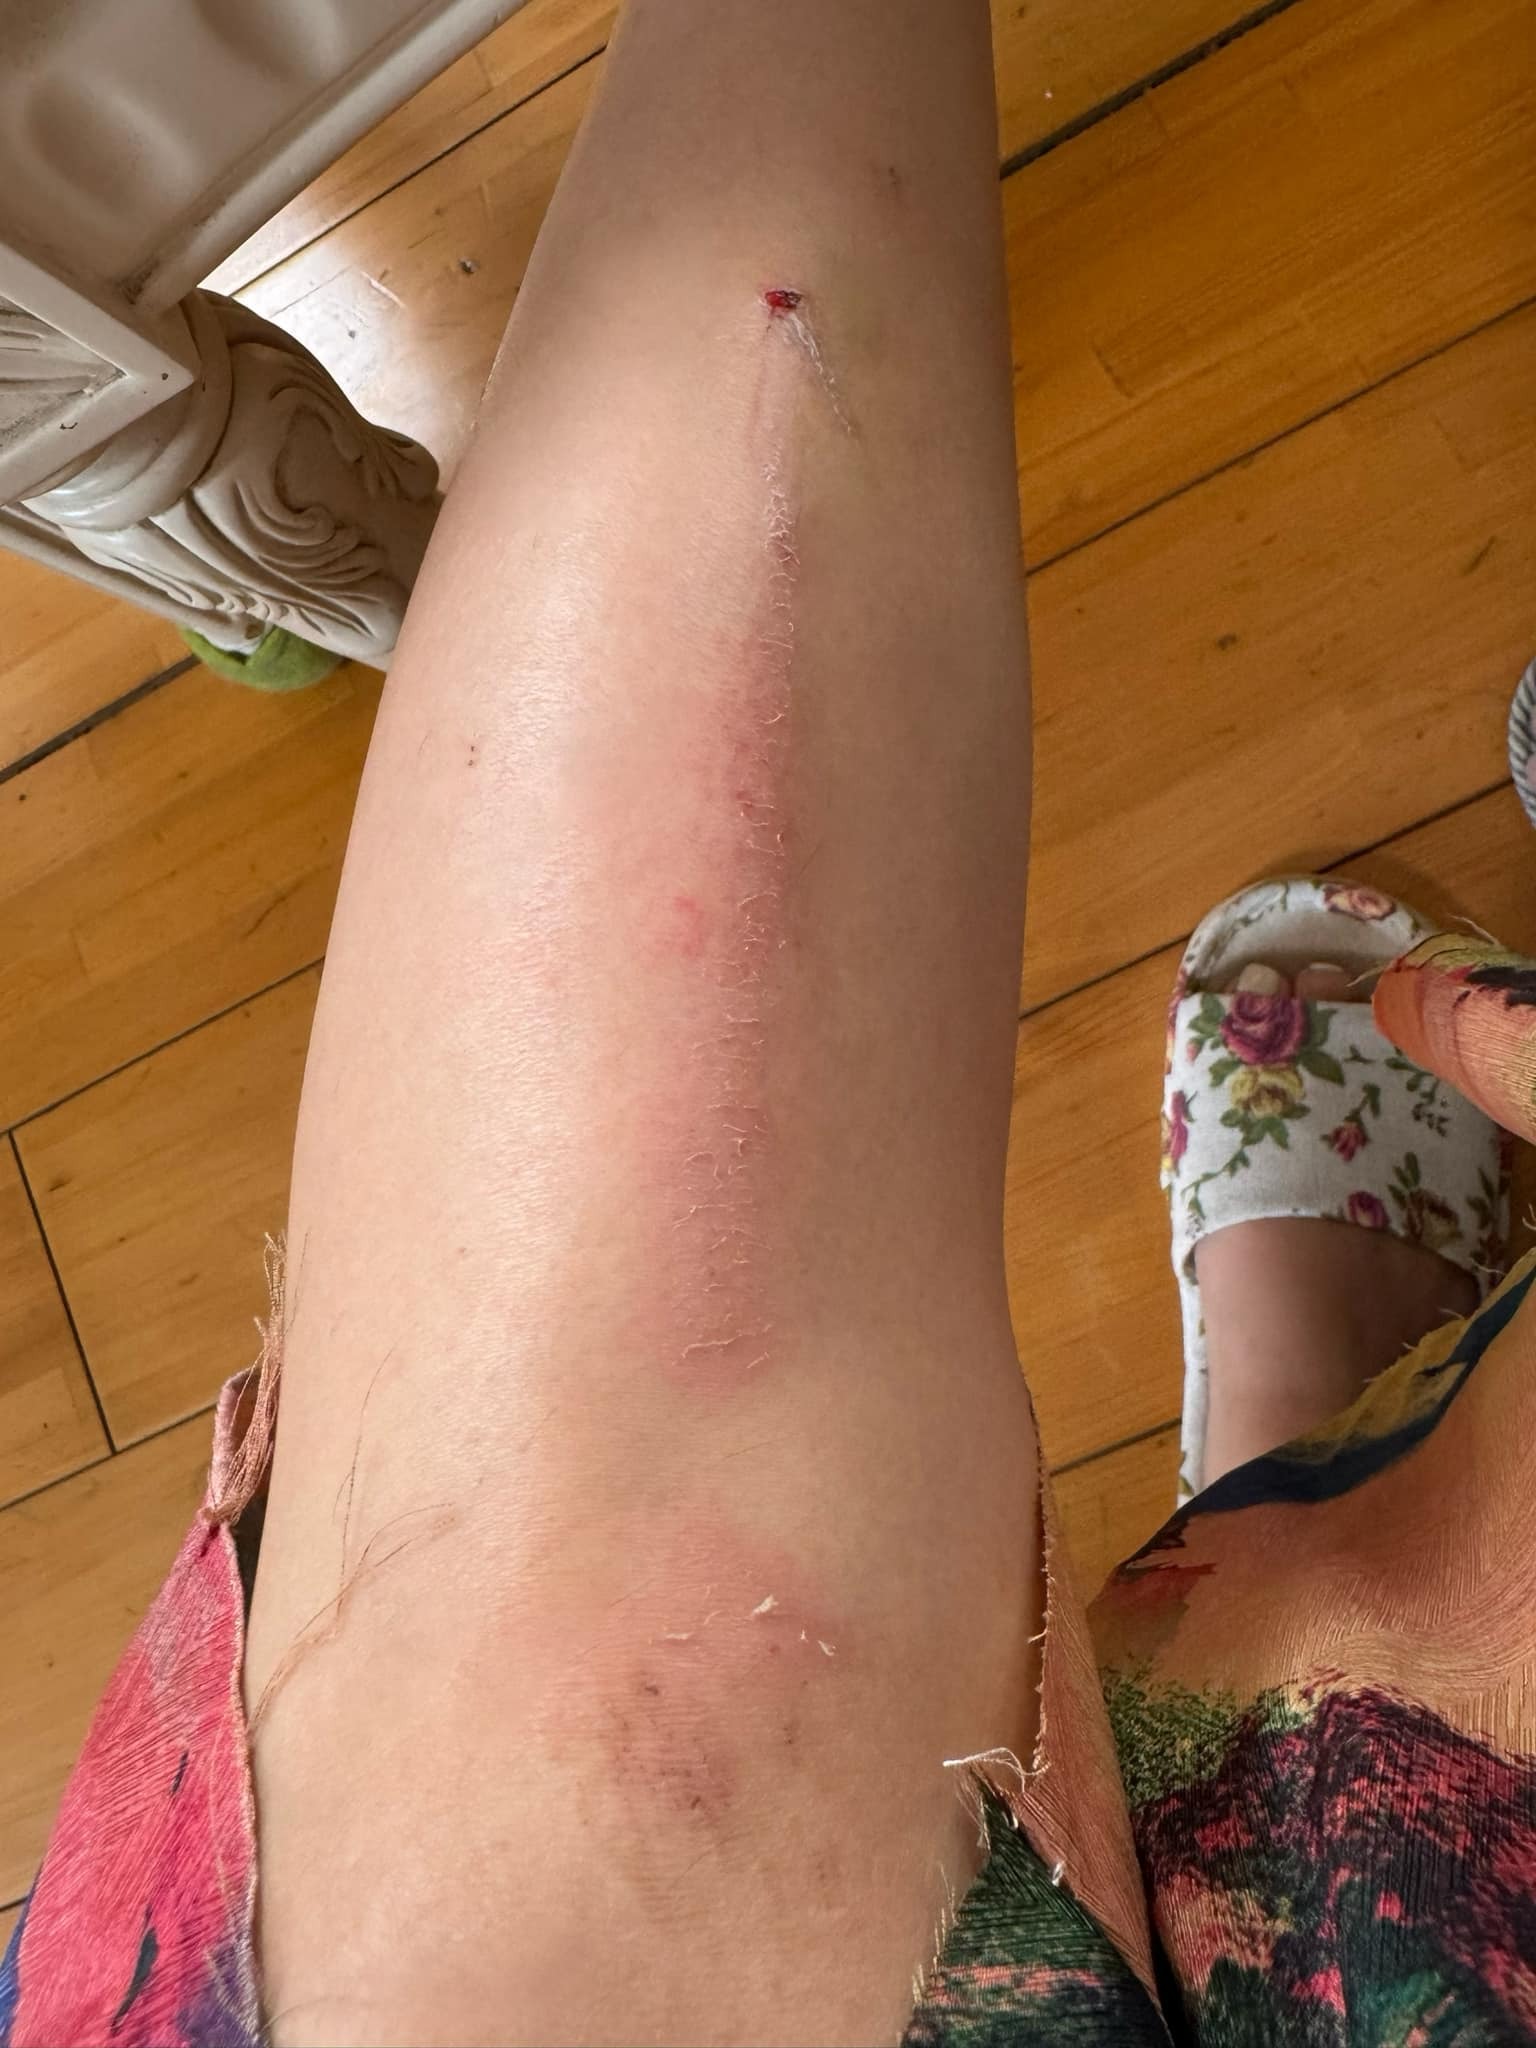 Ngọc Trinh đăng tải hình ảnh bản thân suýt bị gãy chân do té cầu thang